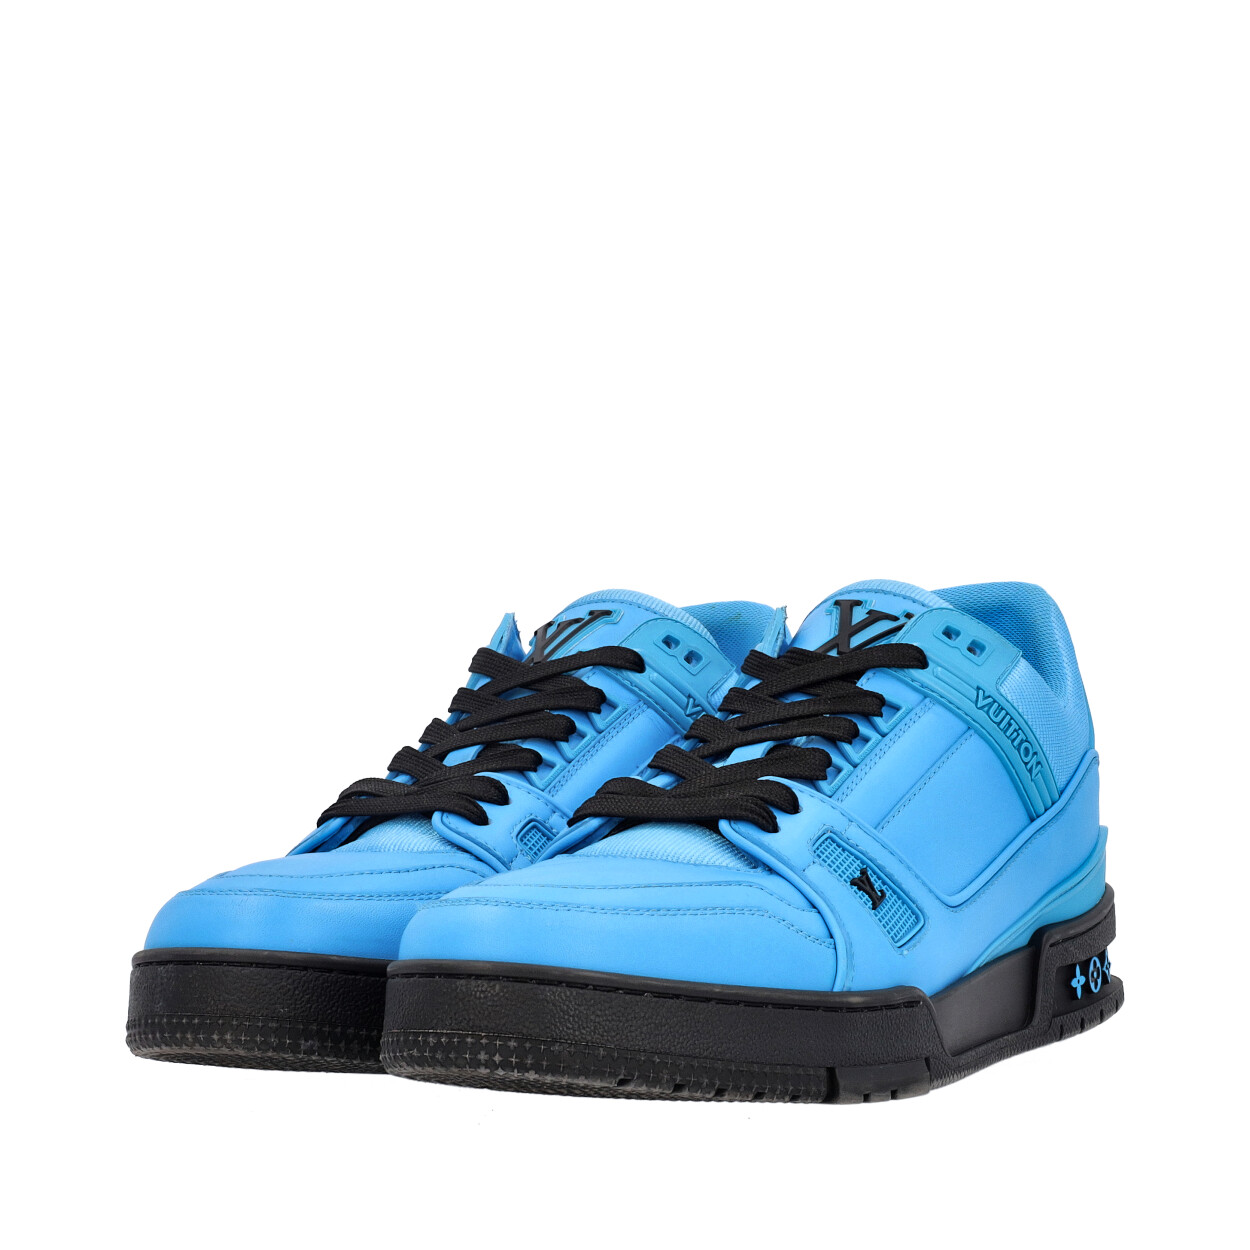 Louis Vuitton LV Trainer Blue Sneaker